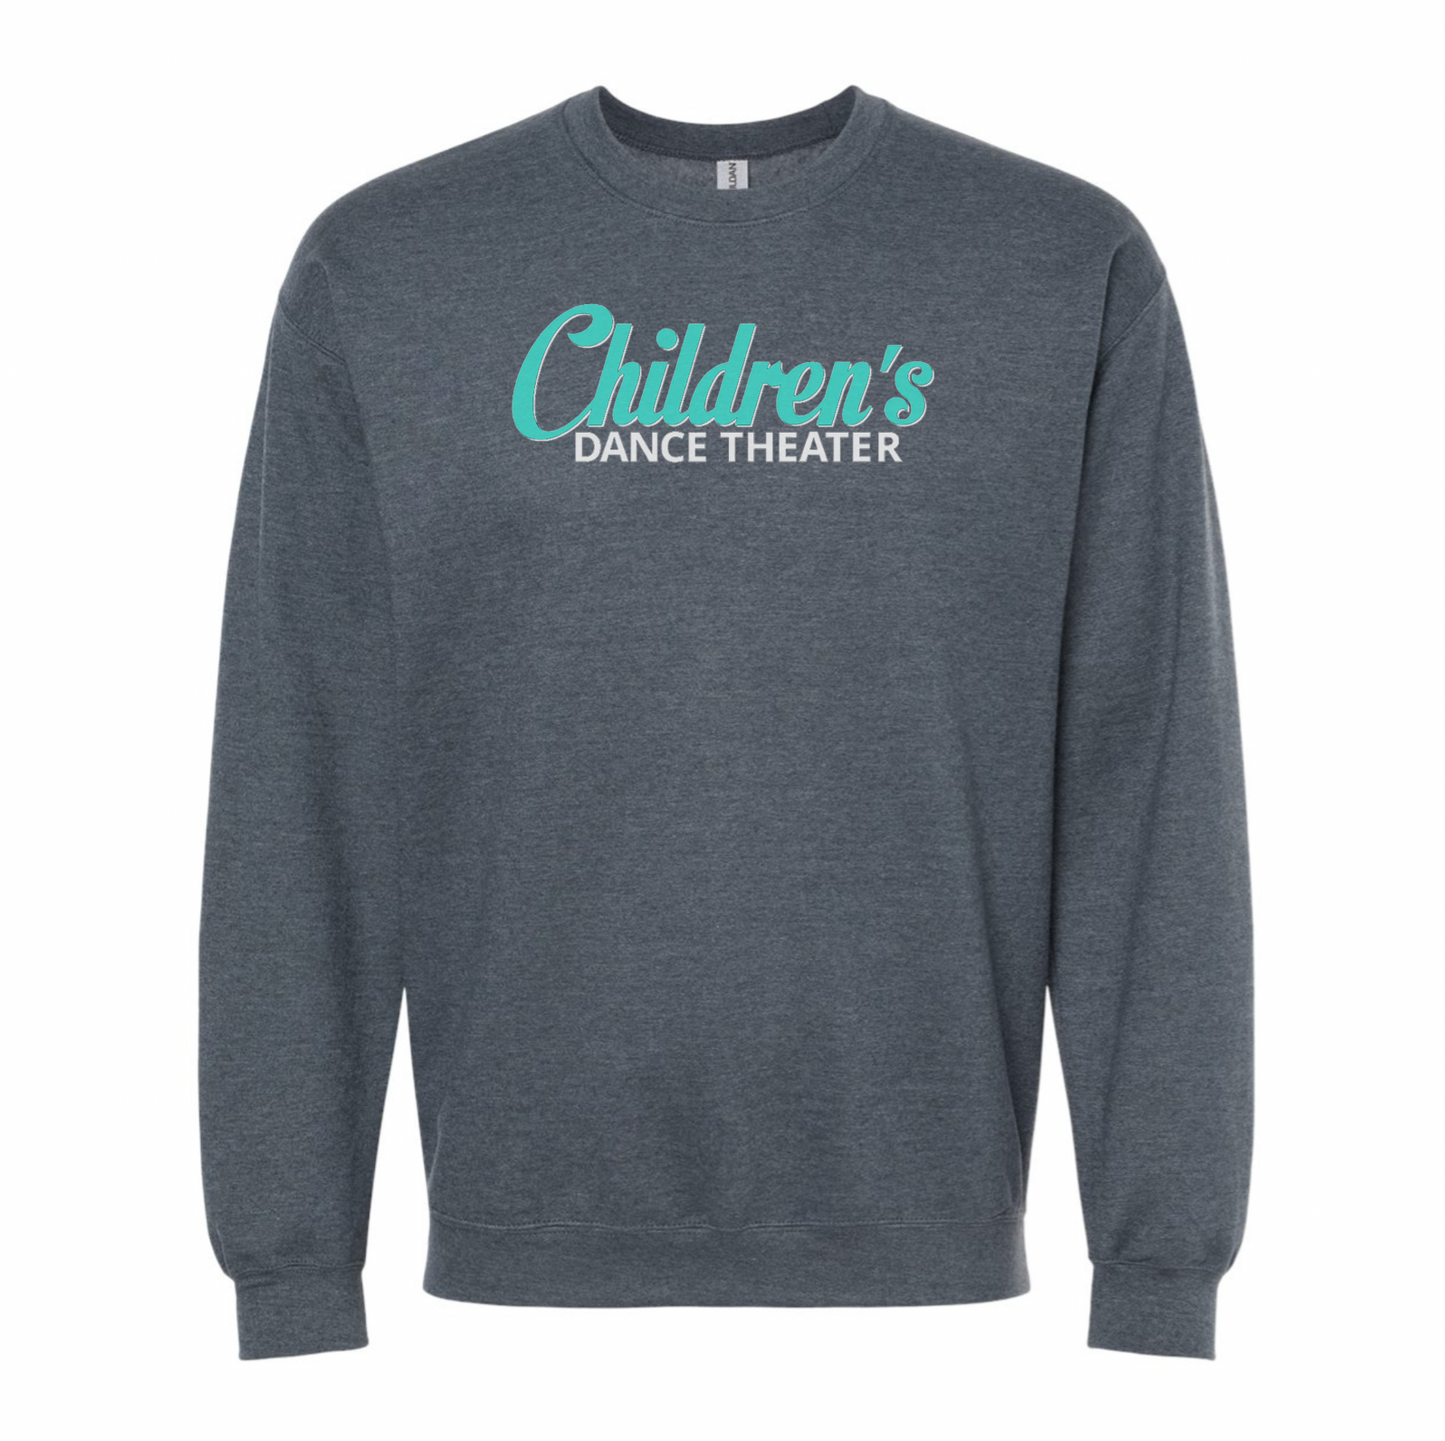 Children's Dance Theater Crewneck Sweatshirt